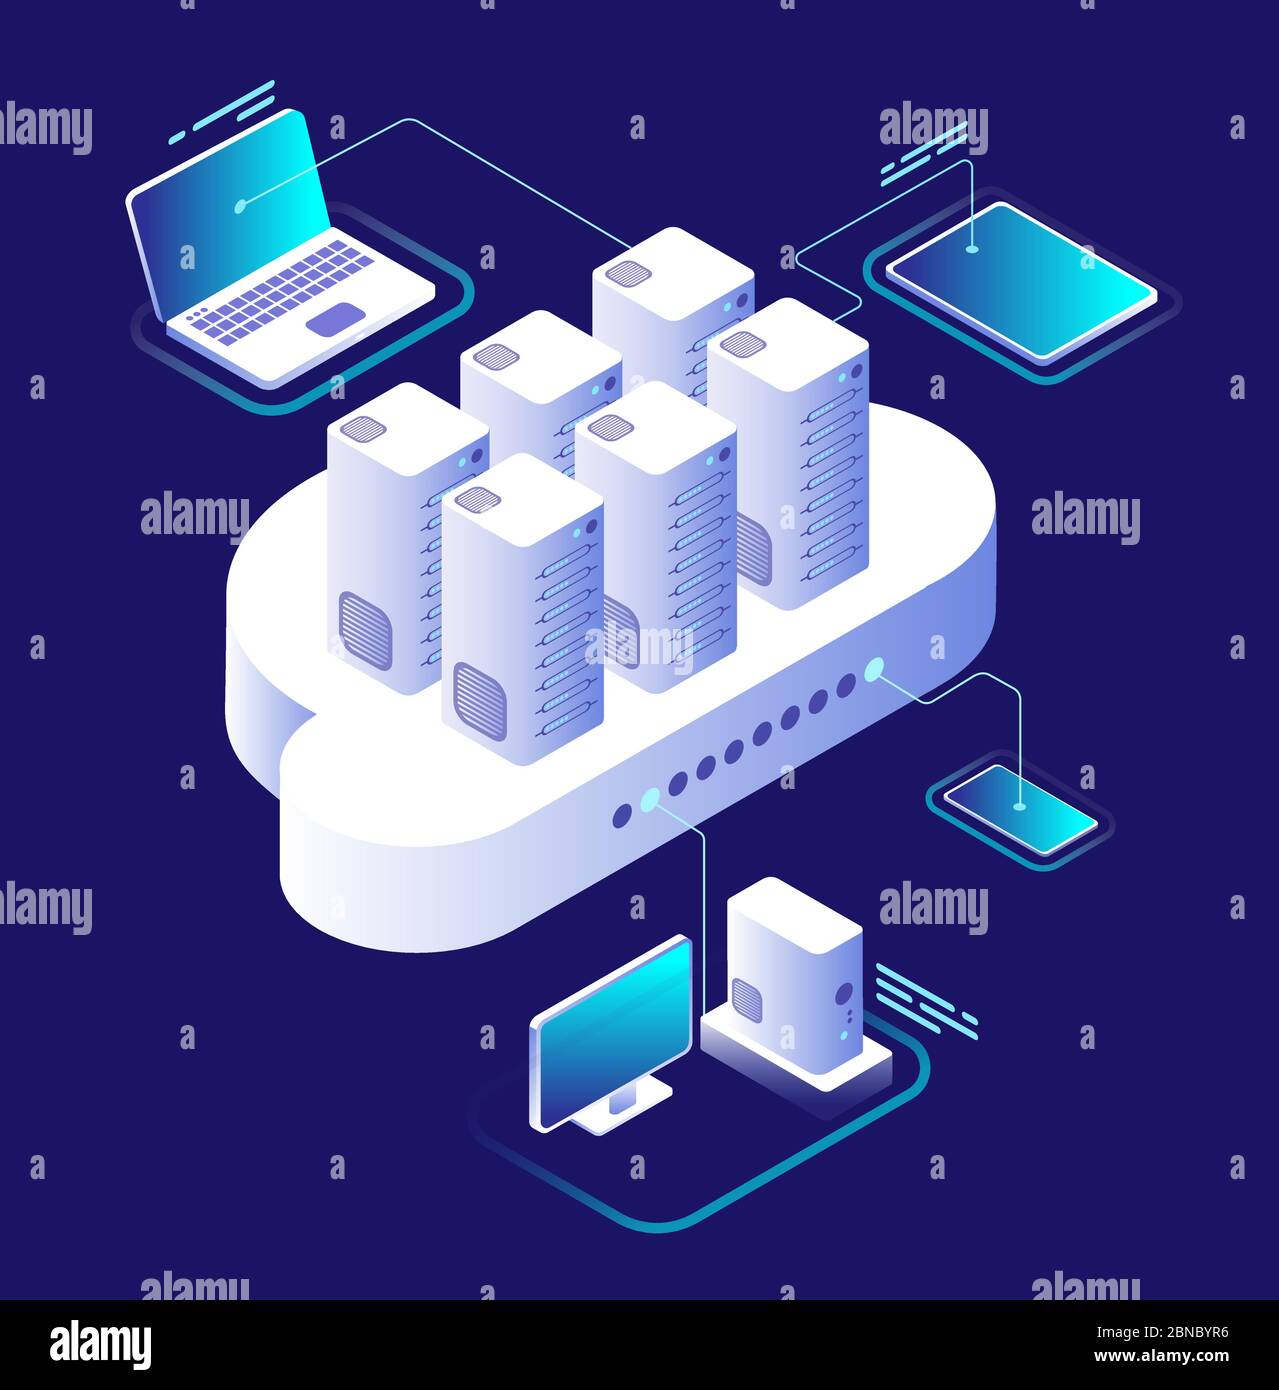 Cloud Computing-Konzept. Computing-Netzwerk, Cloud-Smartphone-App. Datenspeichertechnologie 3d-Vektor-Infografik. Abbildung des Kommunikations- und Verbindungsdienstes, computerisometrische Verarbeitung Stock Vektor